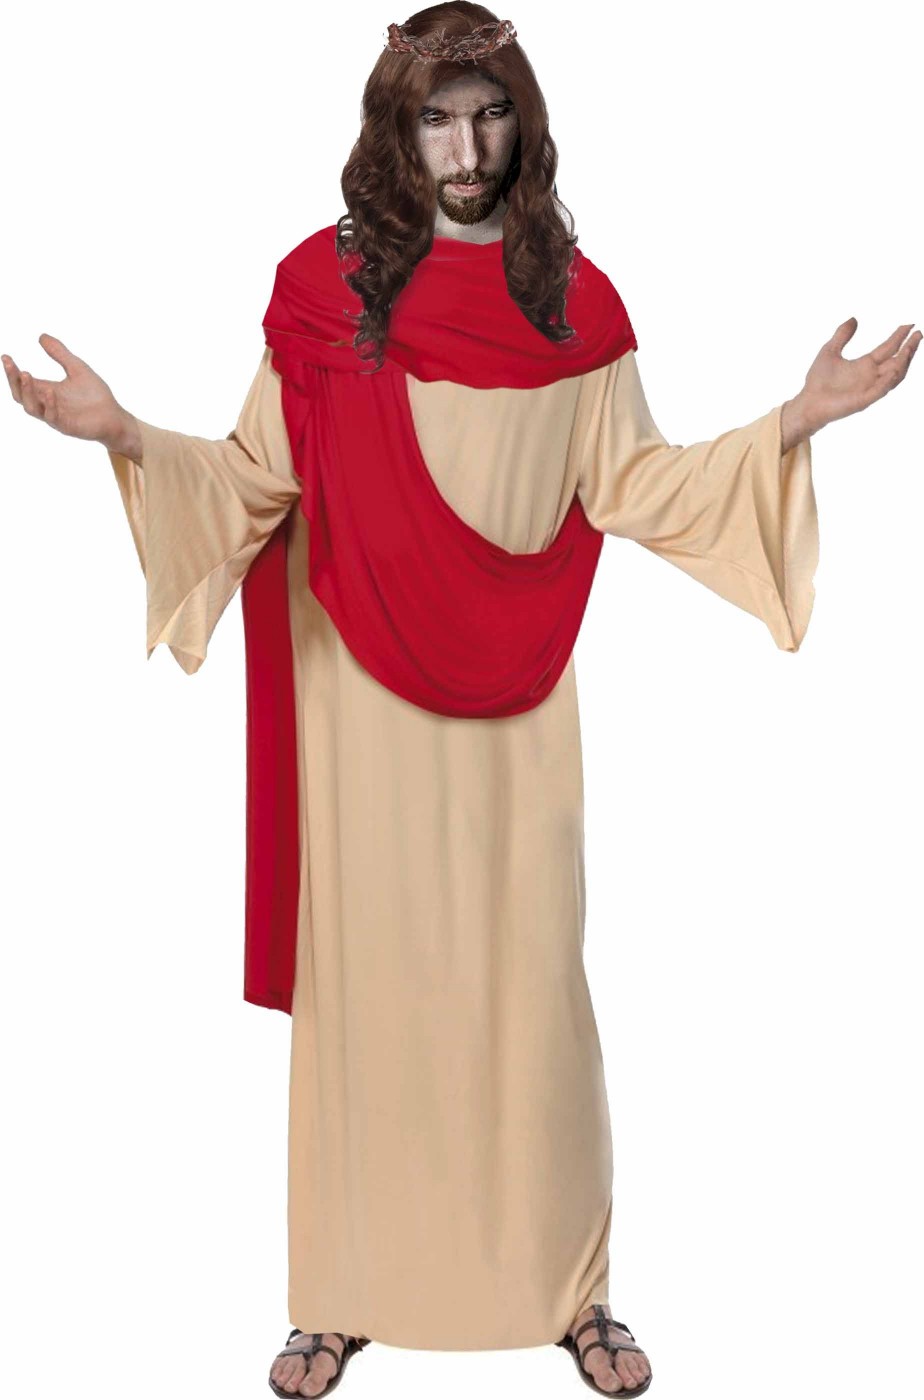 Costume da Gesù o Messia uomo adulto